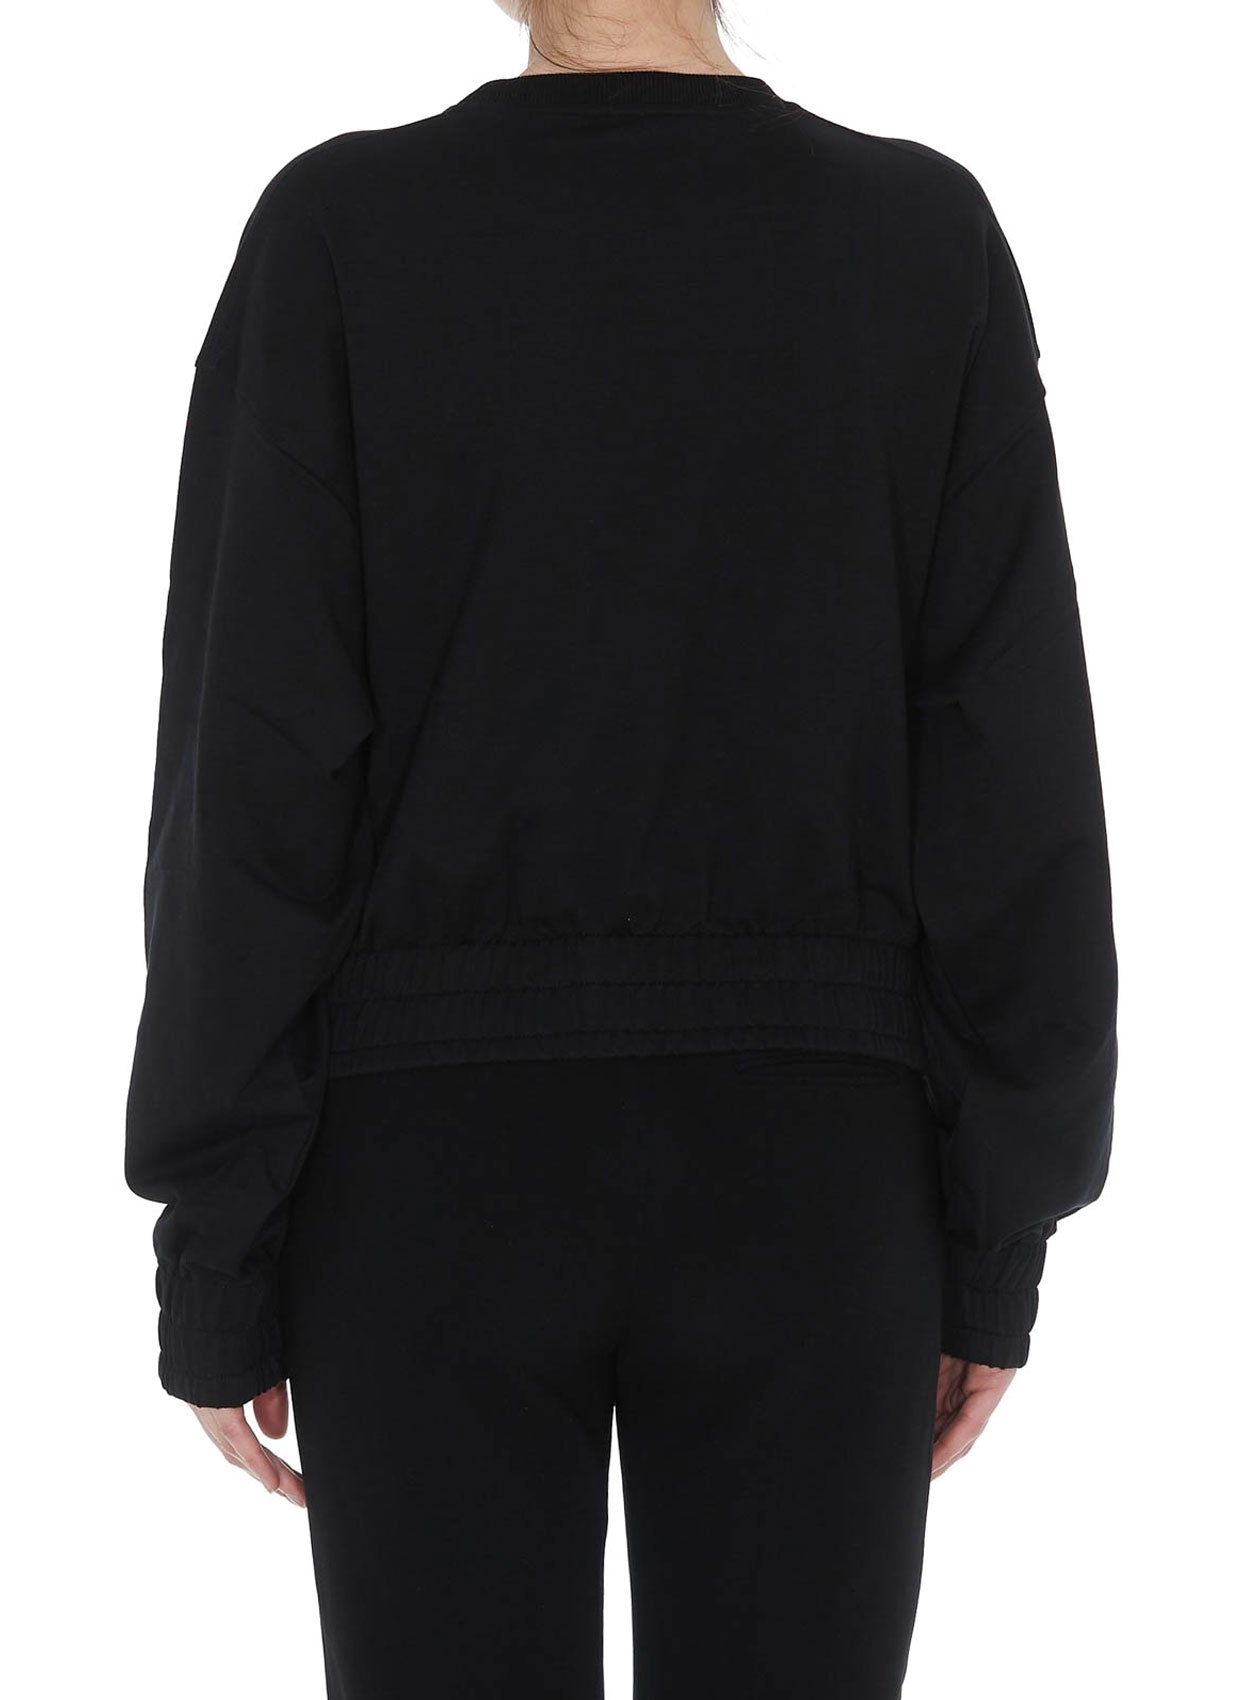 Kenzo Sweatshirt-Libas Trendy Fashion Store